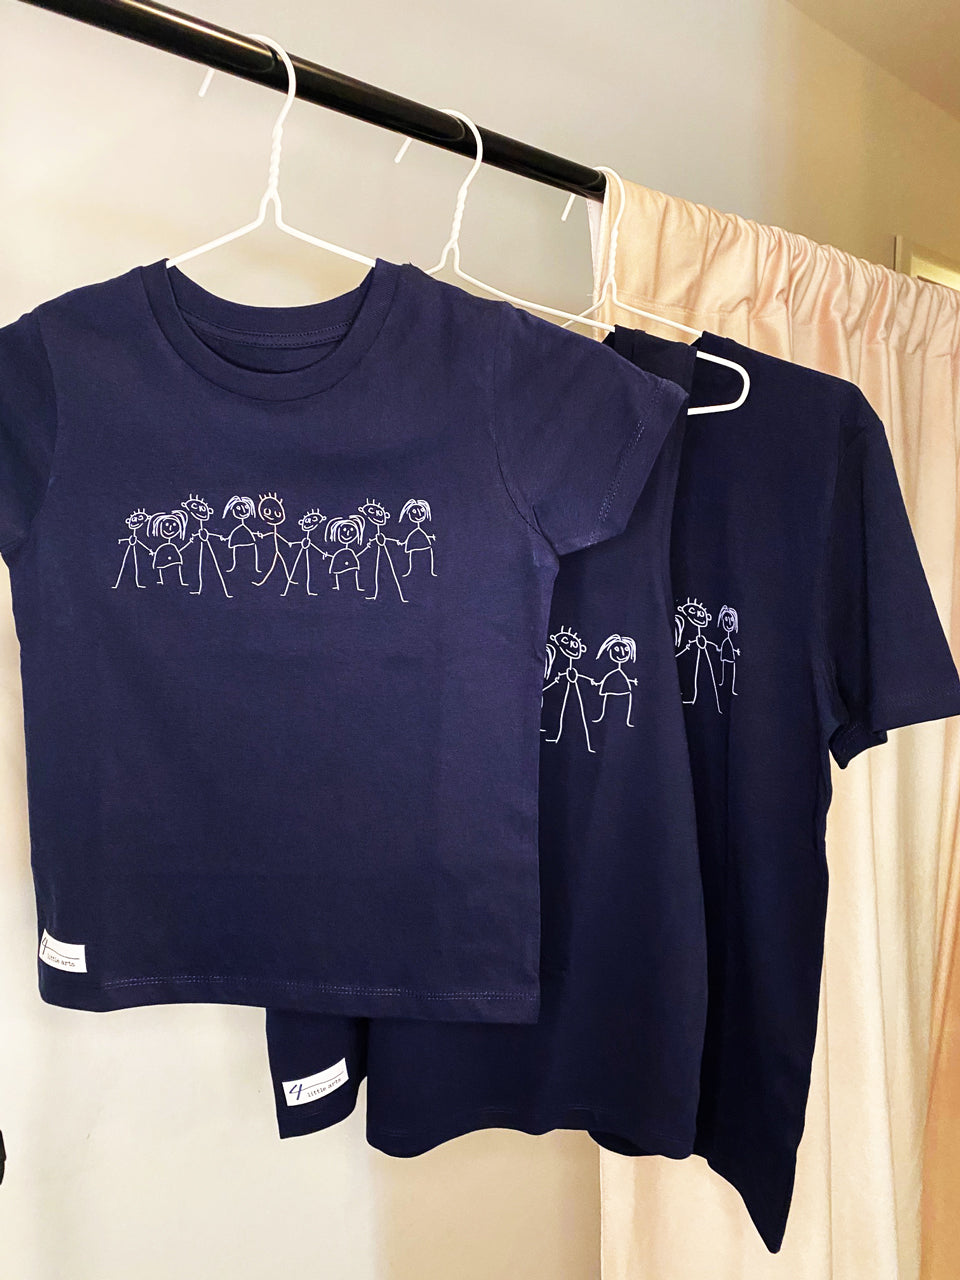 Dunkelblaue Shirts mit dem Aufdruck 'Inklusion' für Erwachsene und Kinder aus Bio-Baumwolle.